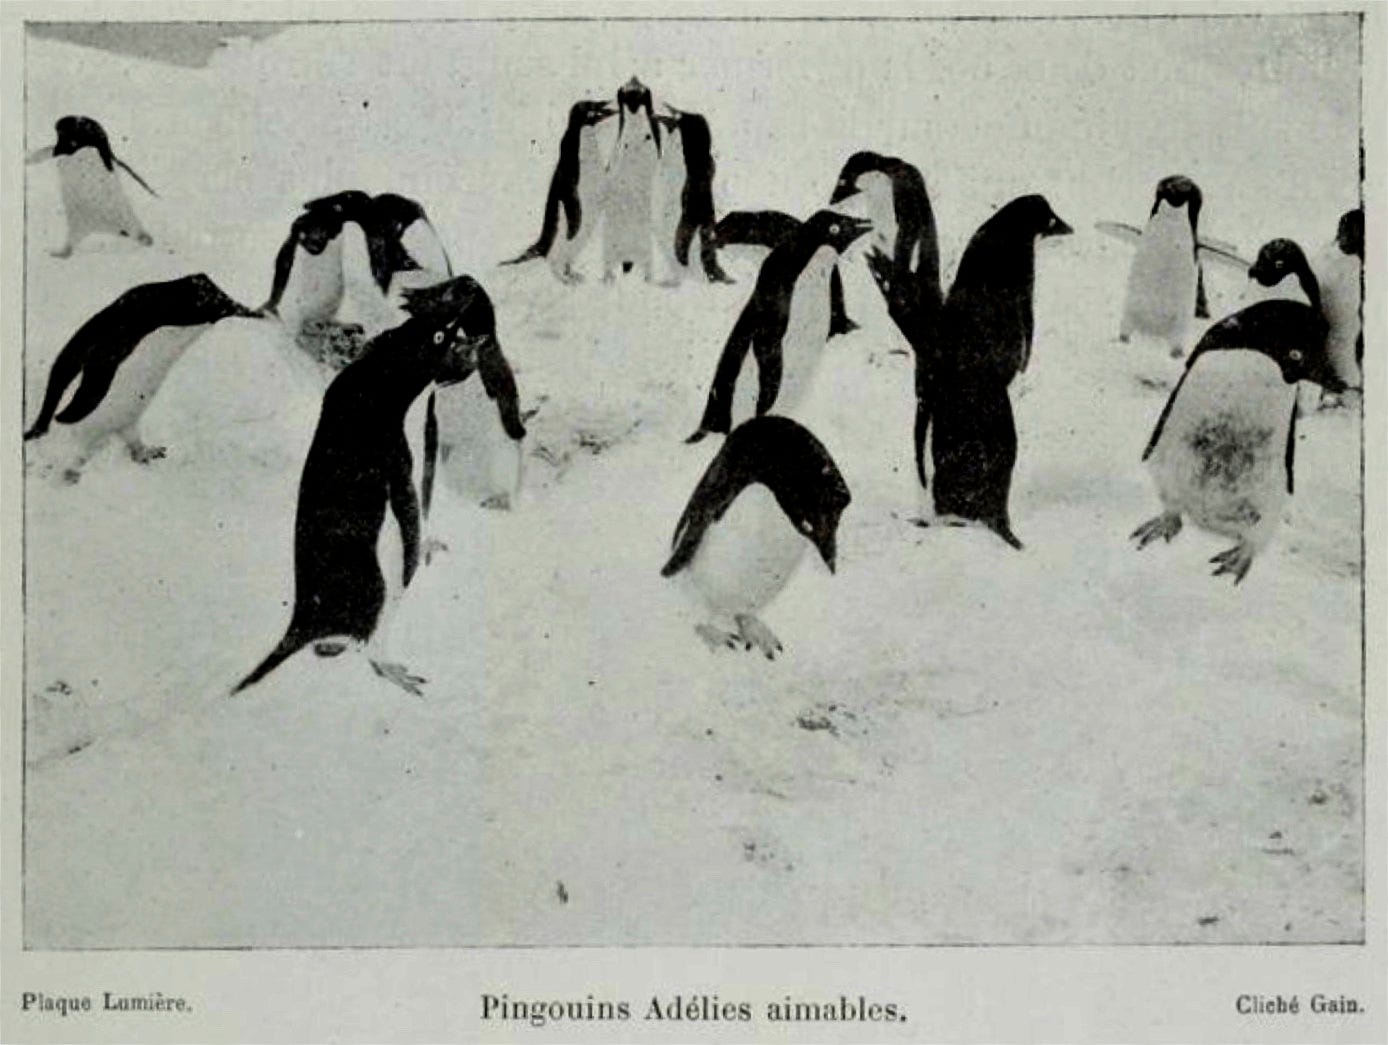 One of the many pictures of penguins in Jean Charcot, Le Pourquoi Pas ? dans l'Antarctique, Journal de la Deuxième expédition au Pôle Sud, Paris, Flammarion, 1910.